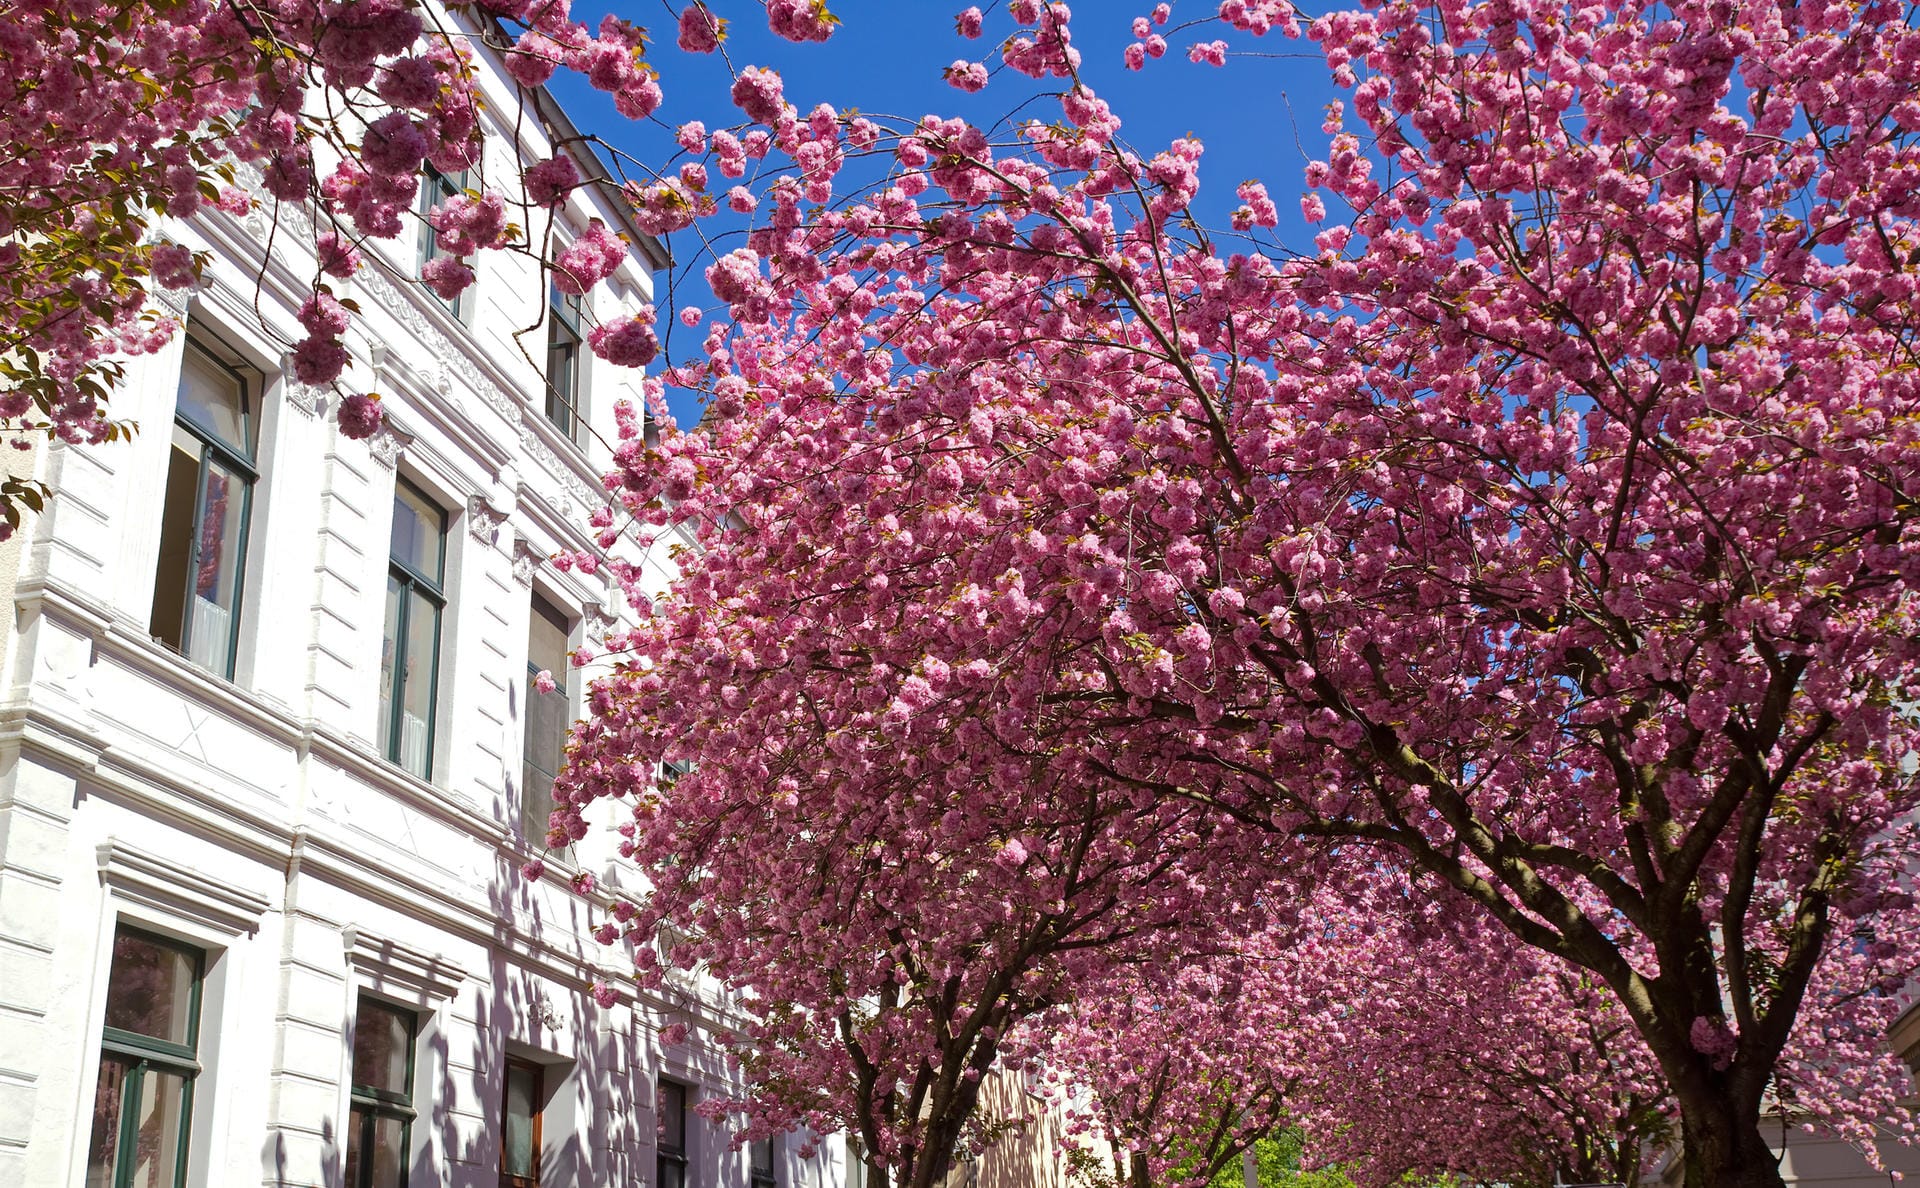 Cherry blossom in Bonn